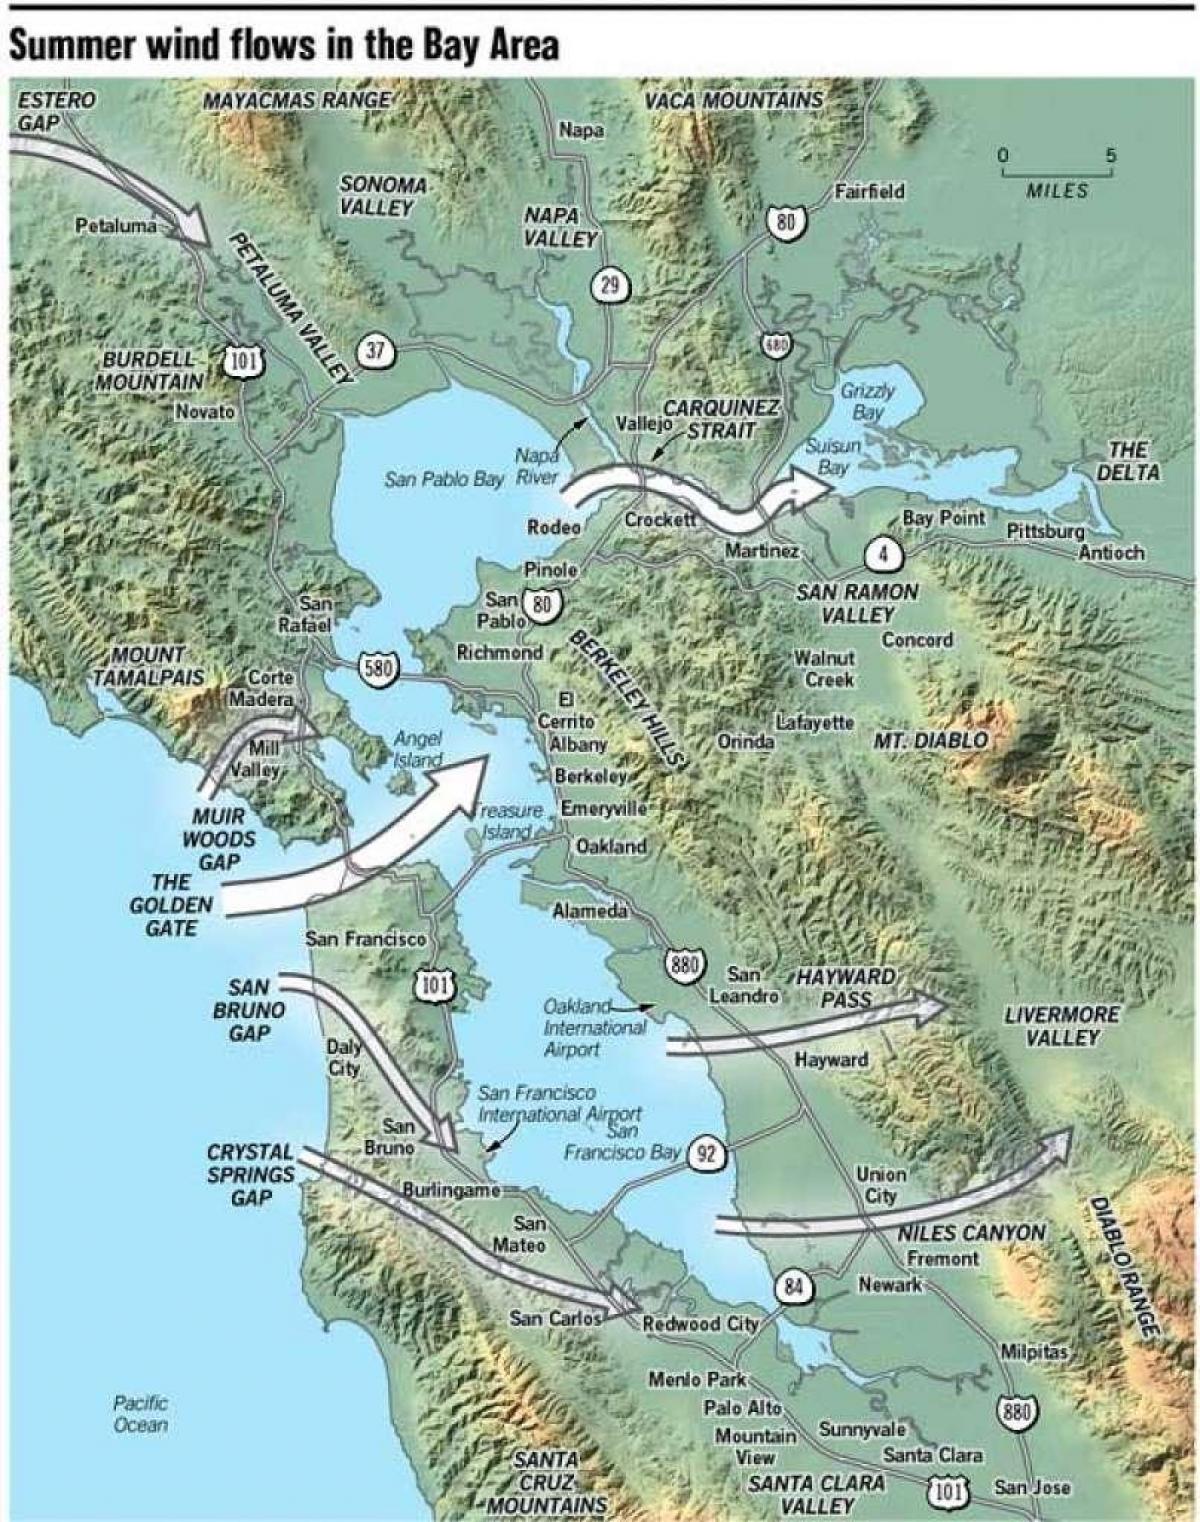 نقشہ سان فرانسسکو کے microclimate